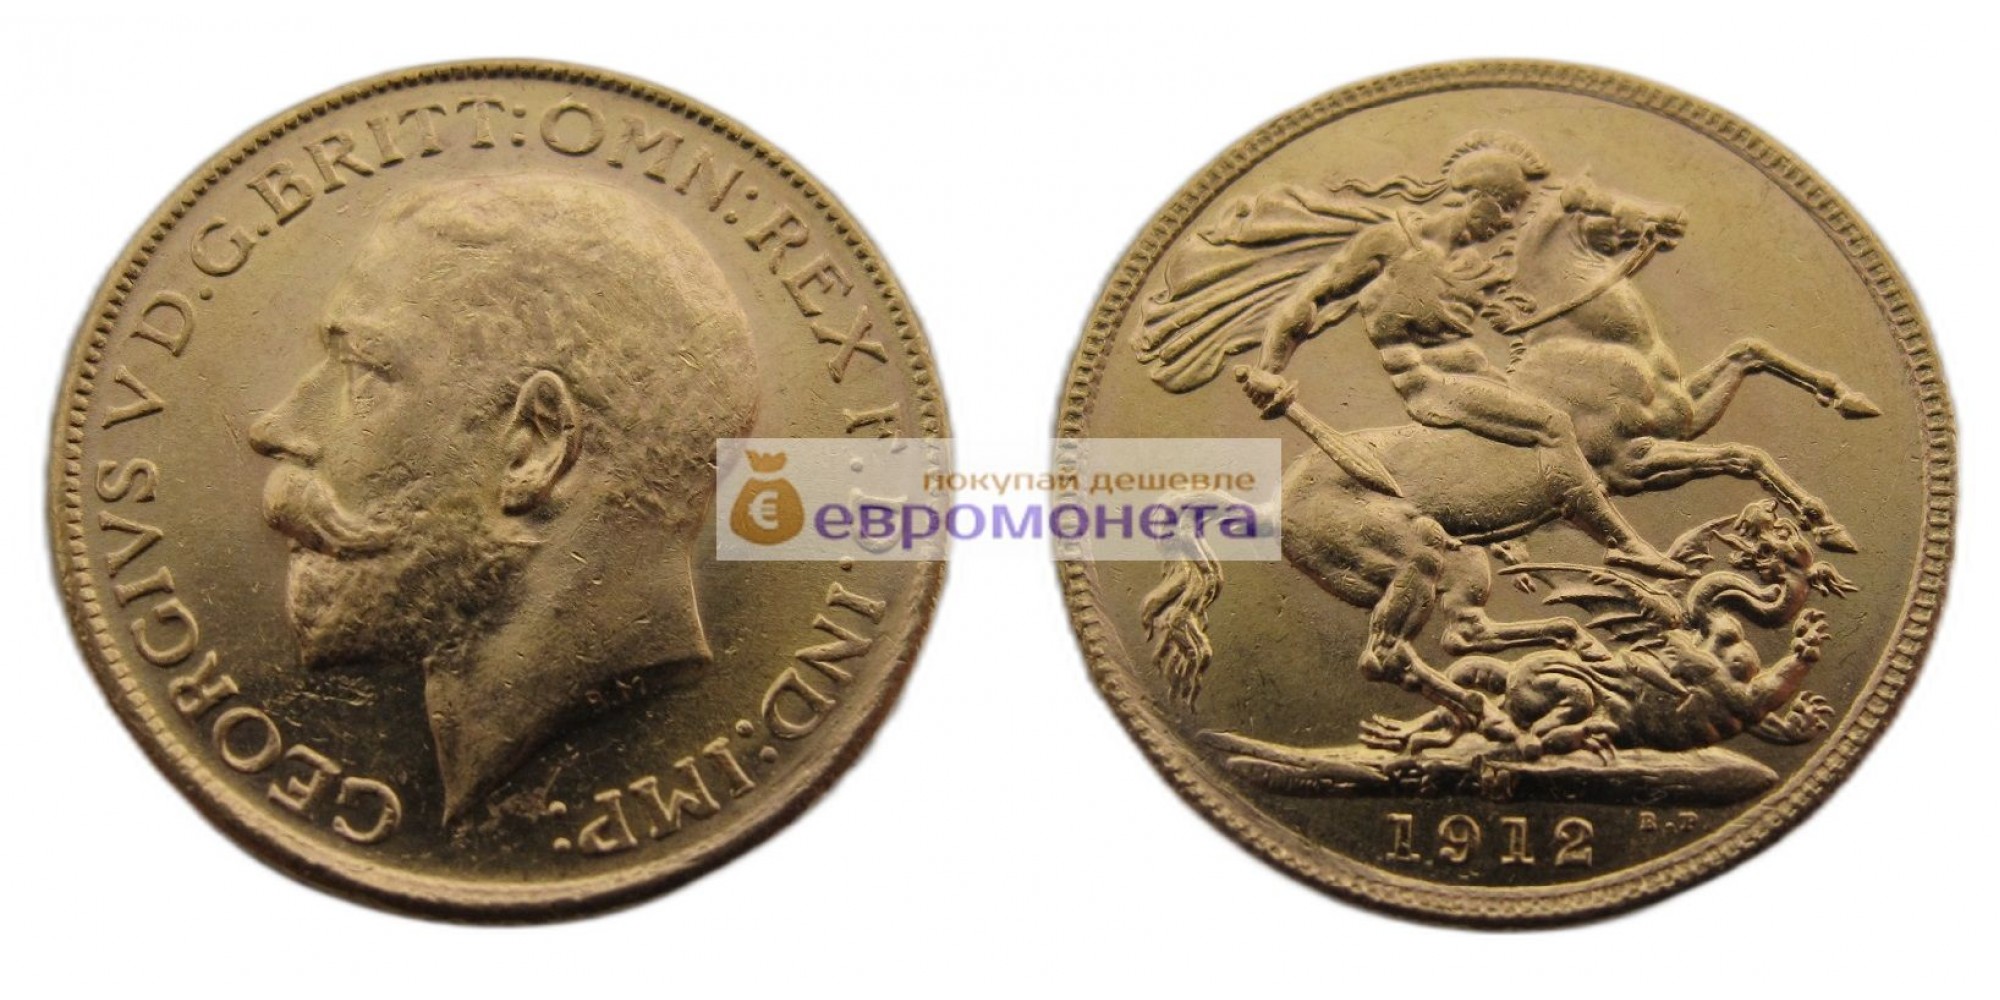 Австралия 1 соверен 1912 год. Король Георг V. Отметка монетного двора "M" - Мельбурн. Золото